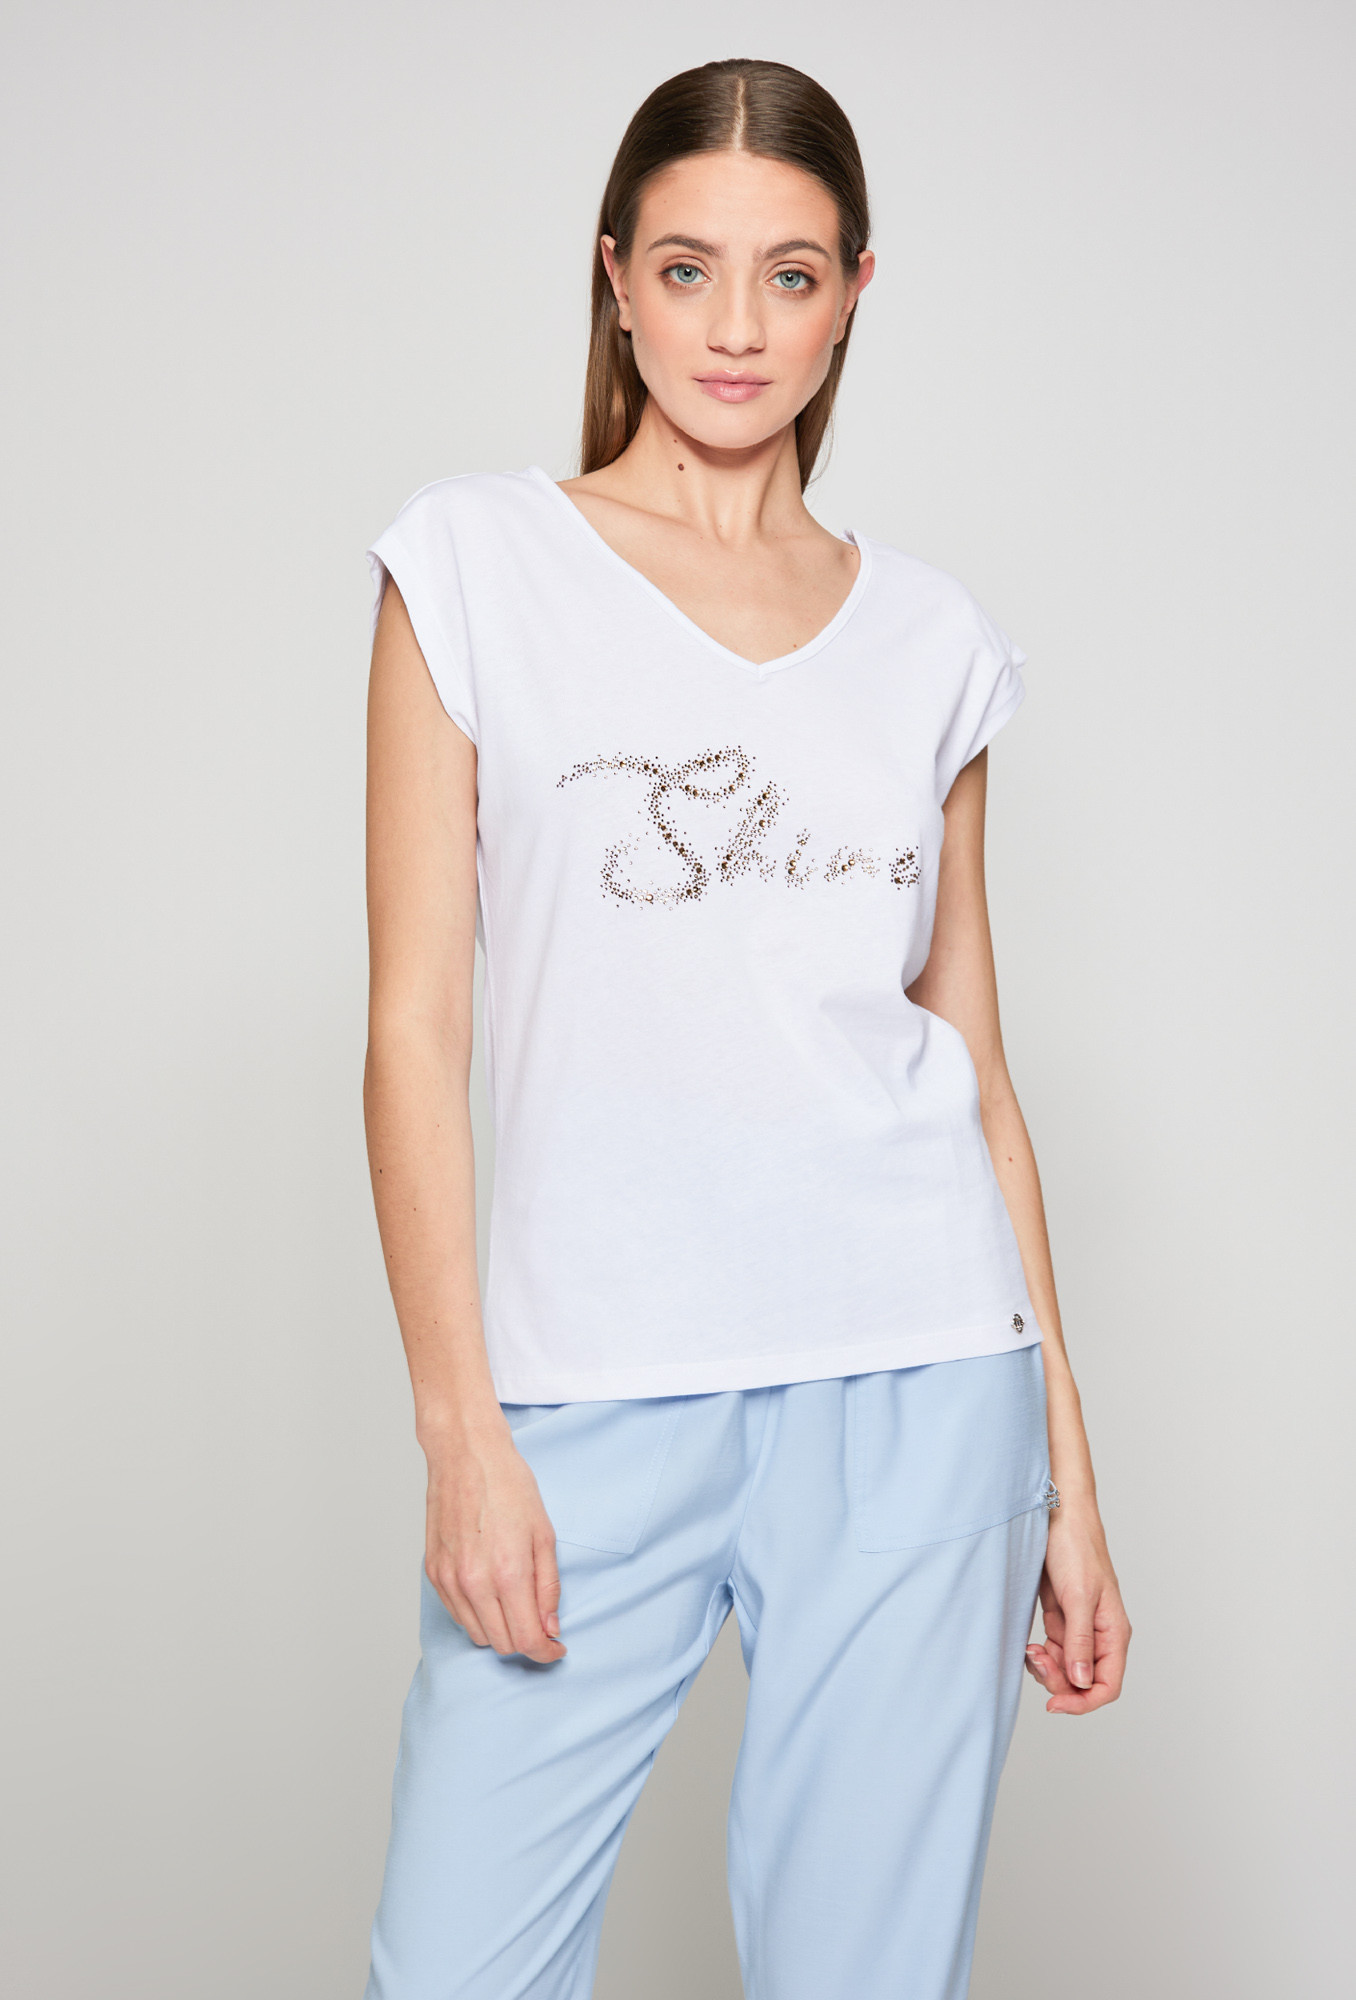 Monnari T-Shirts Cotton T-Shirt With Sequin Inscription White S